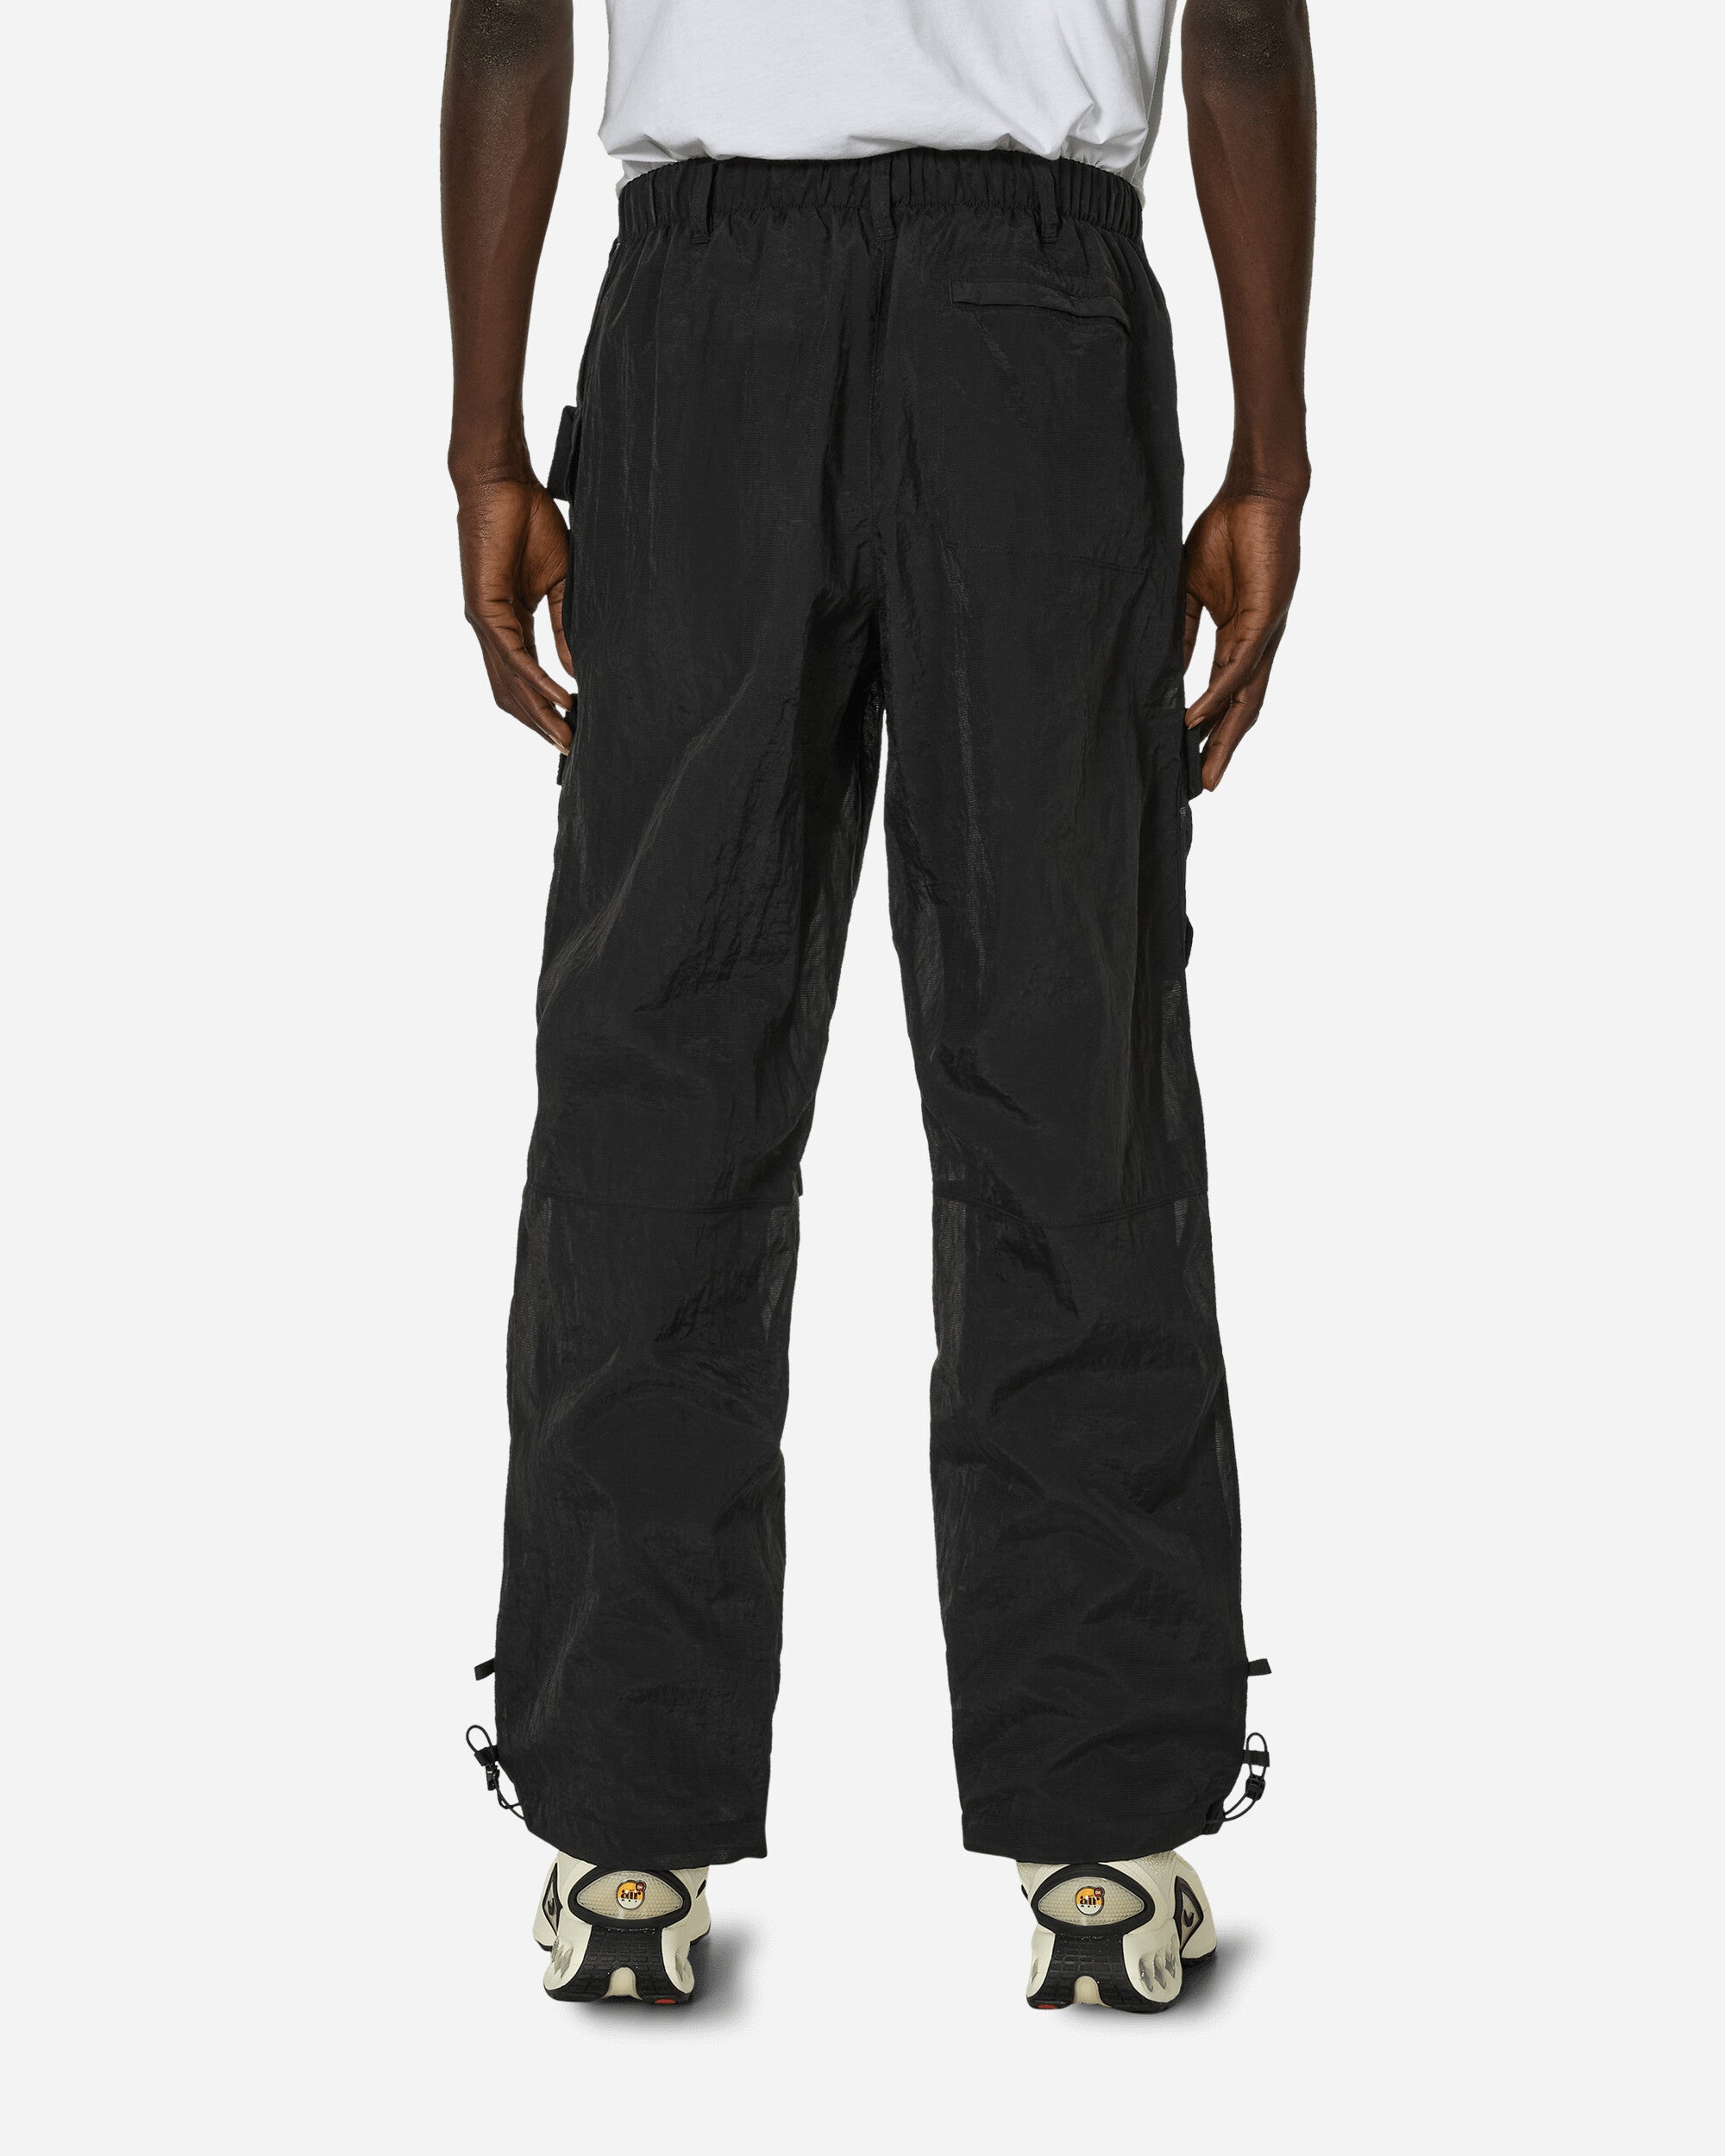 Nike M Nsw Tp Wvn Mesh Pant Black/Black Pants Sweatpants FQ3868-010